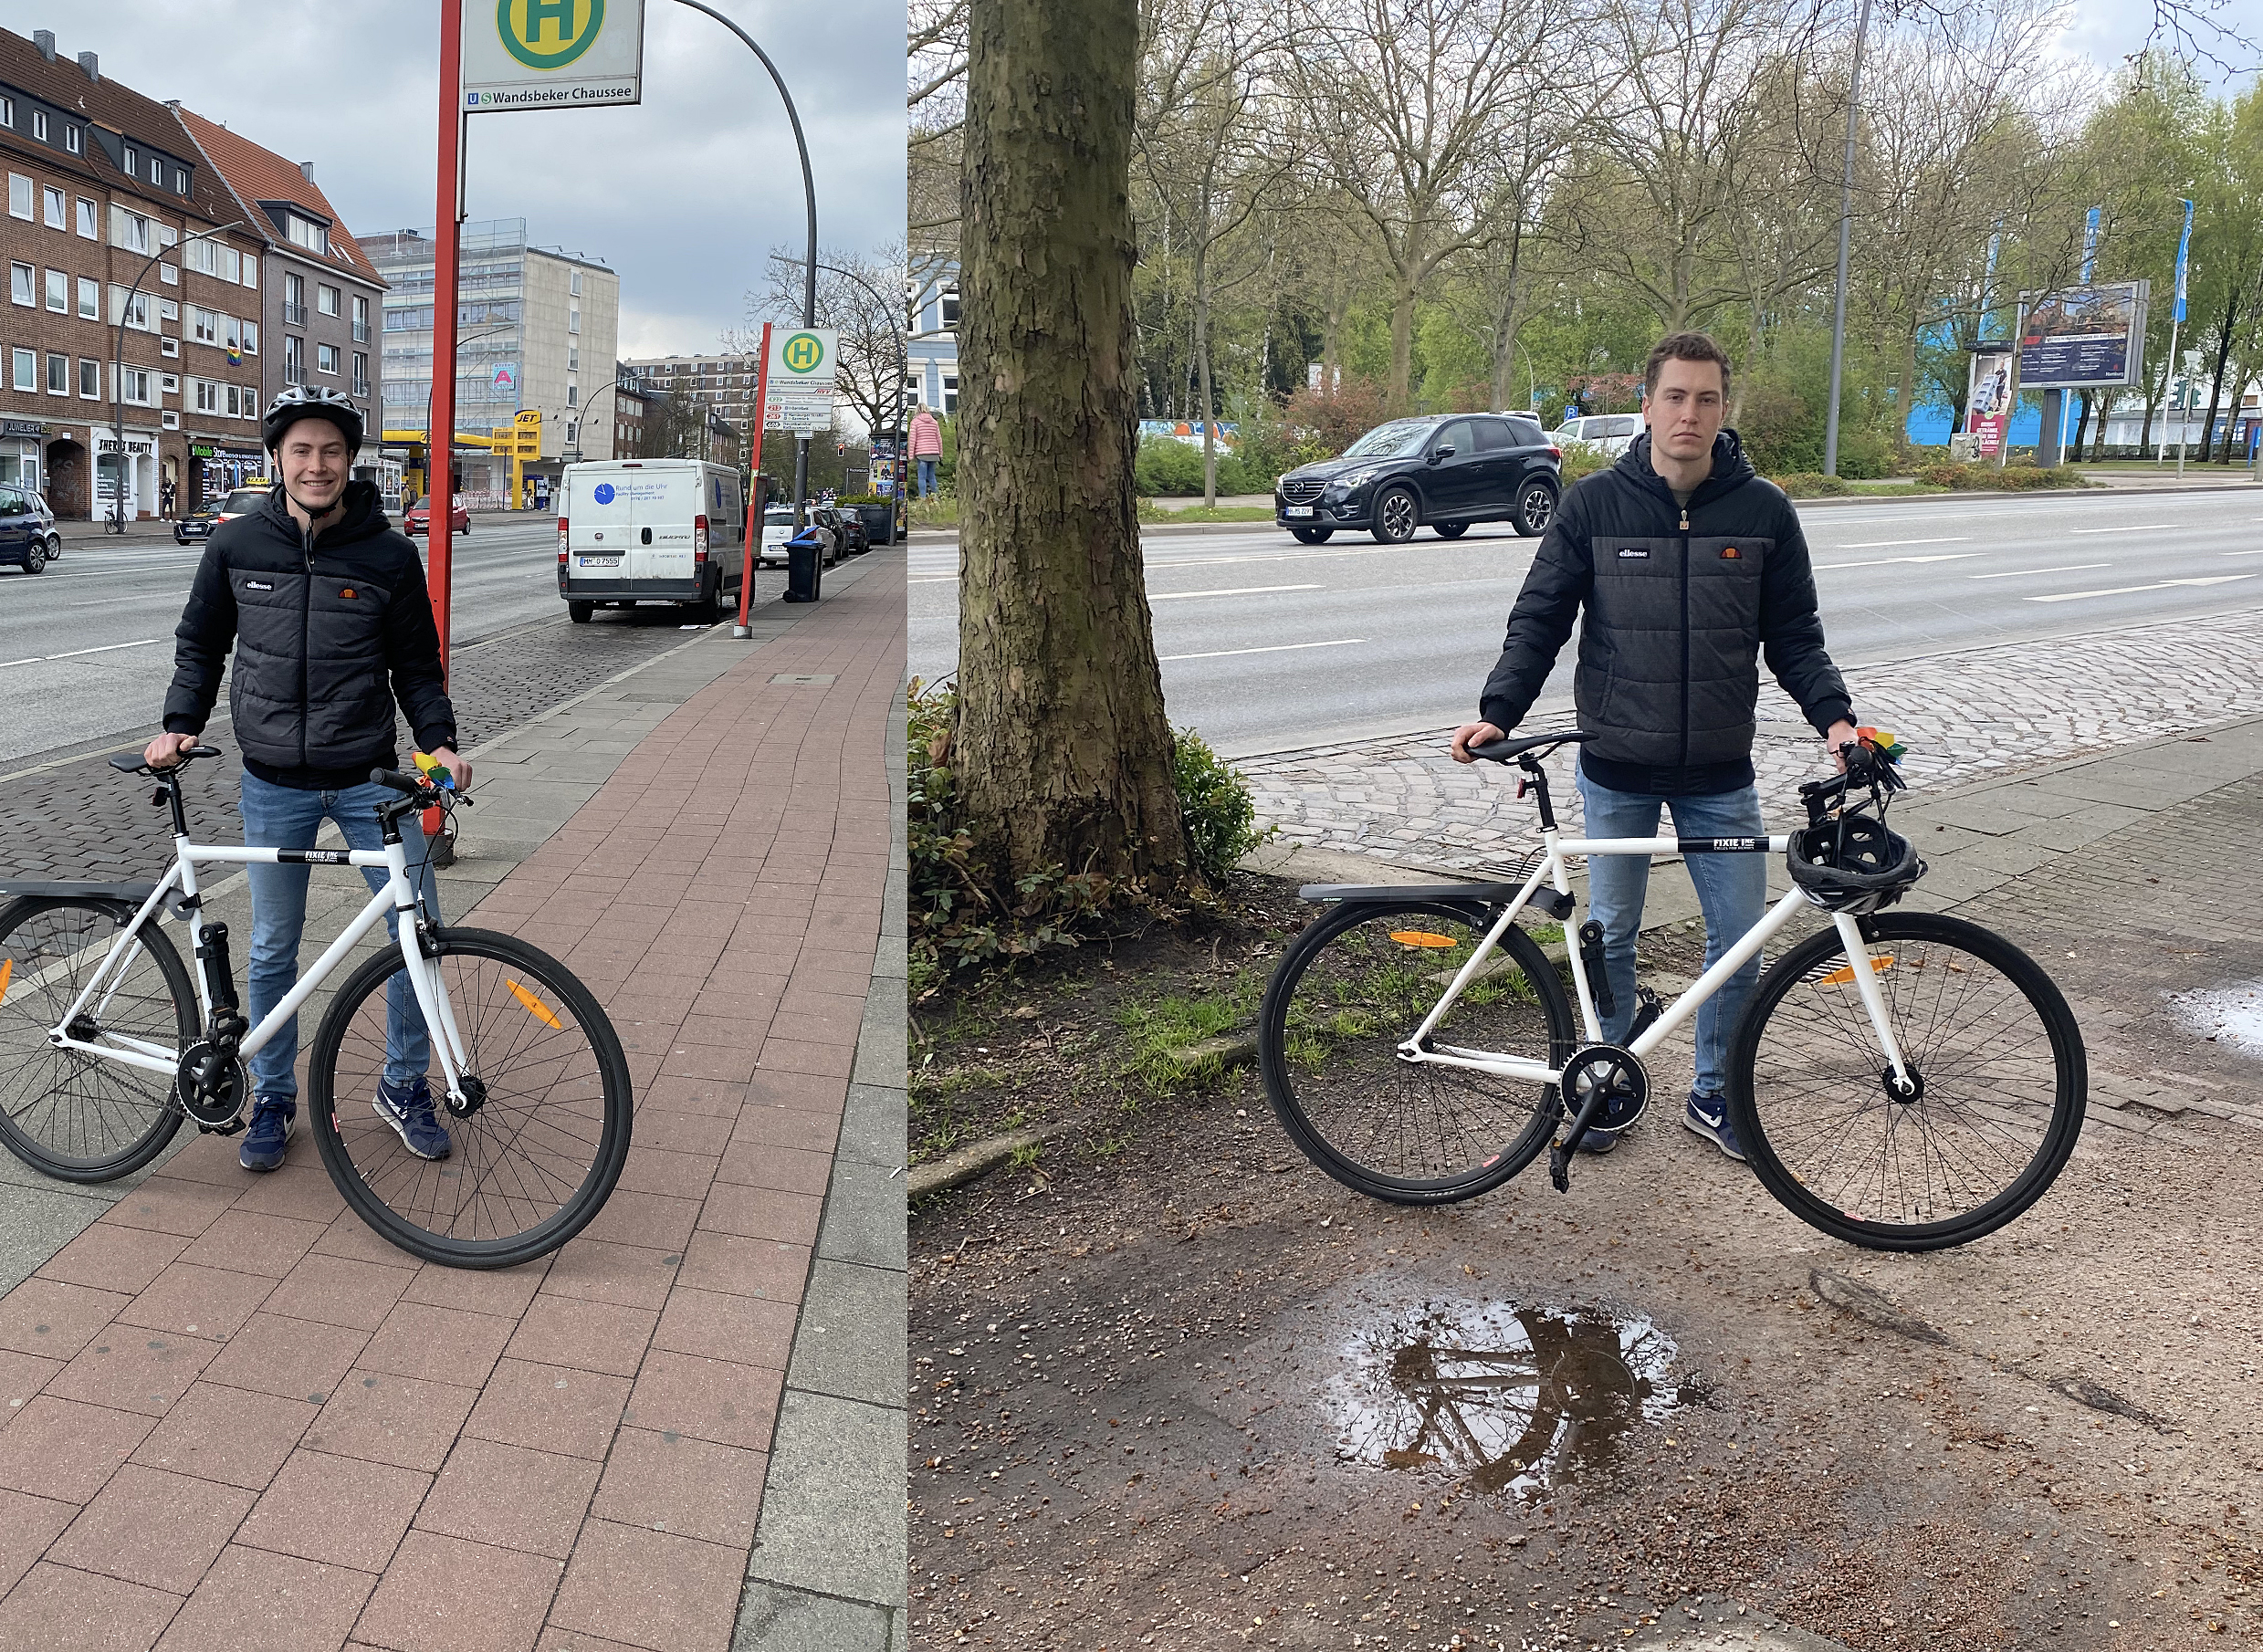 Geplante Fahrspurverringerung auf der Wandsbeker Chaussee: FDP Wandsbek fordert auch im Sinne der Radfahrer andere Prioritätensetzung